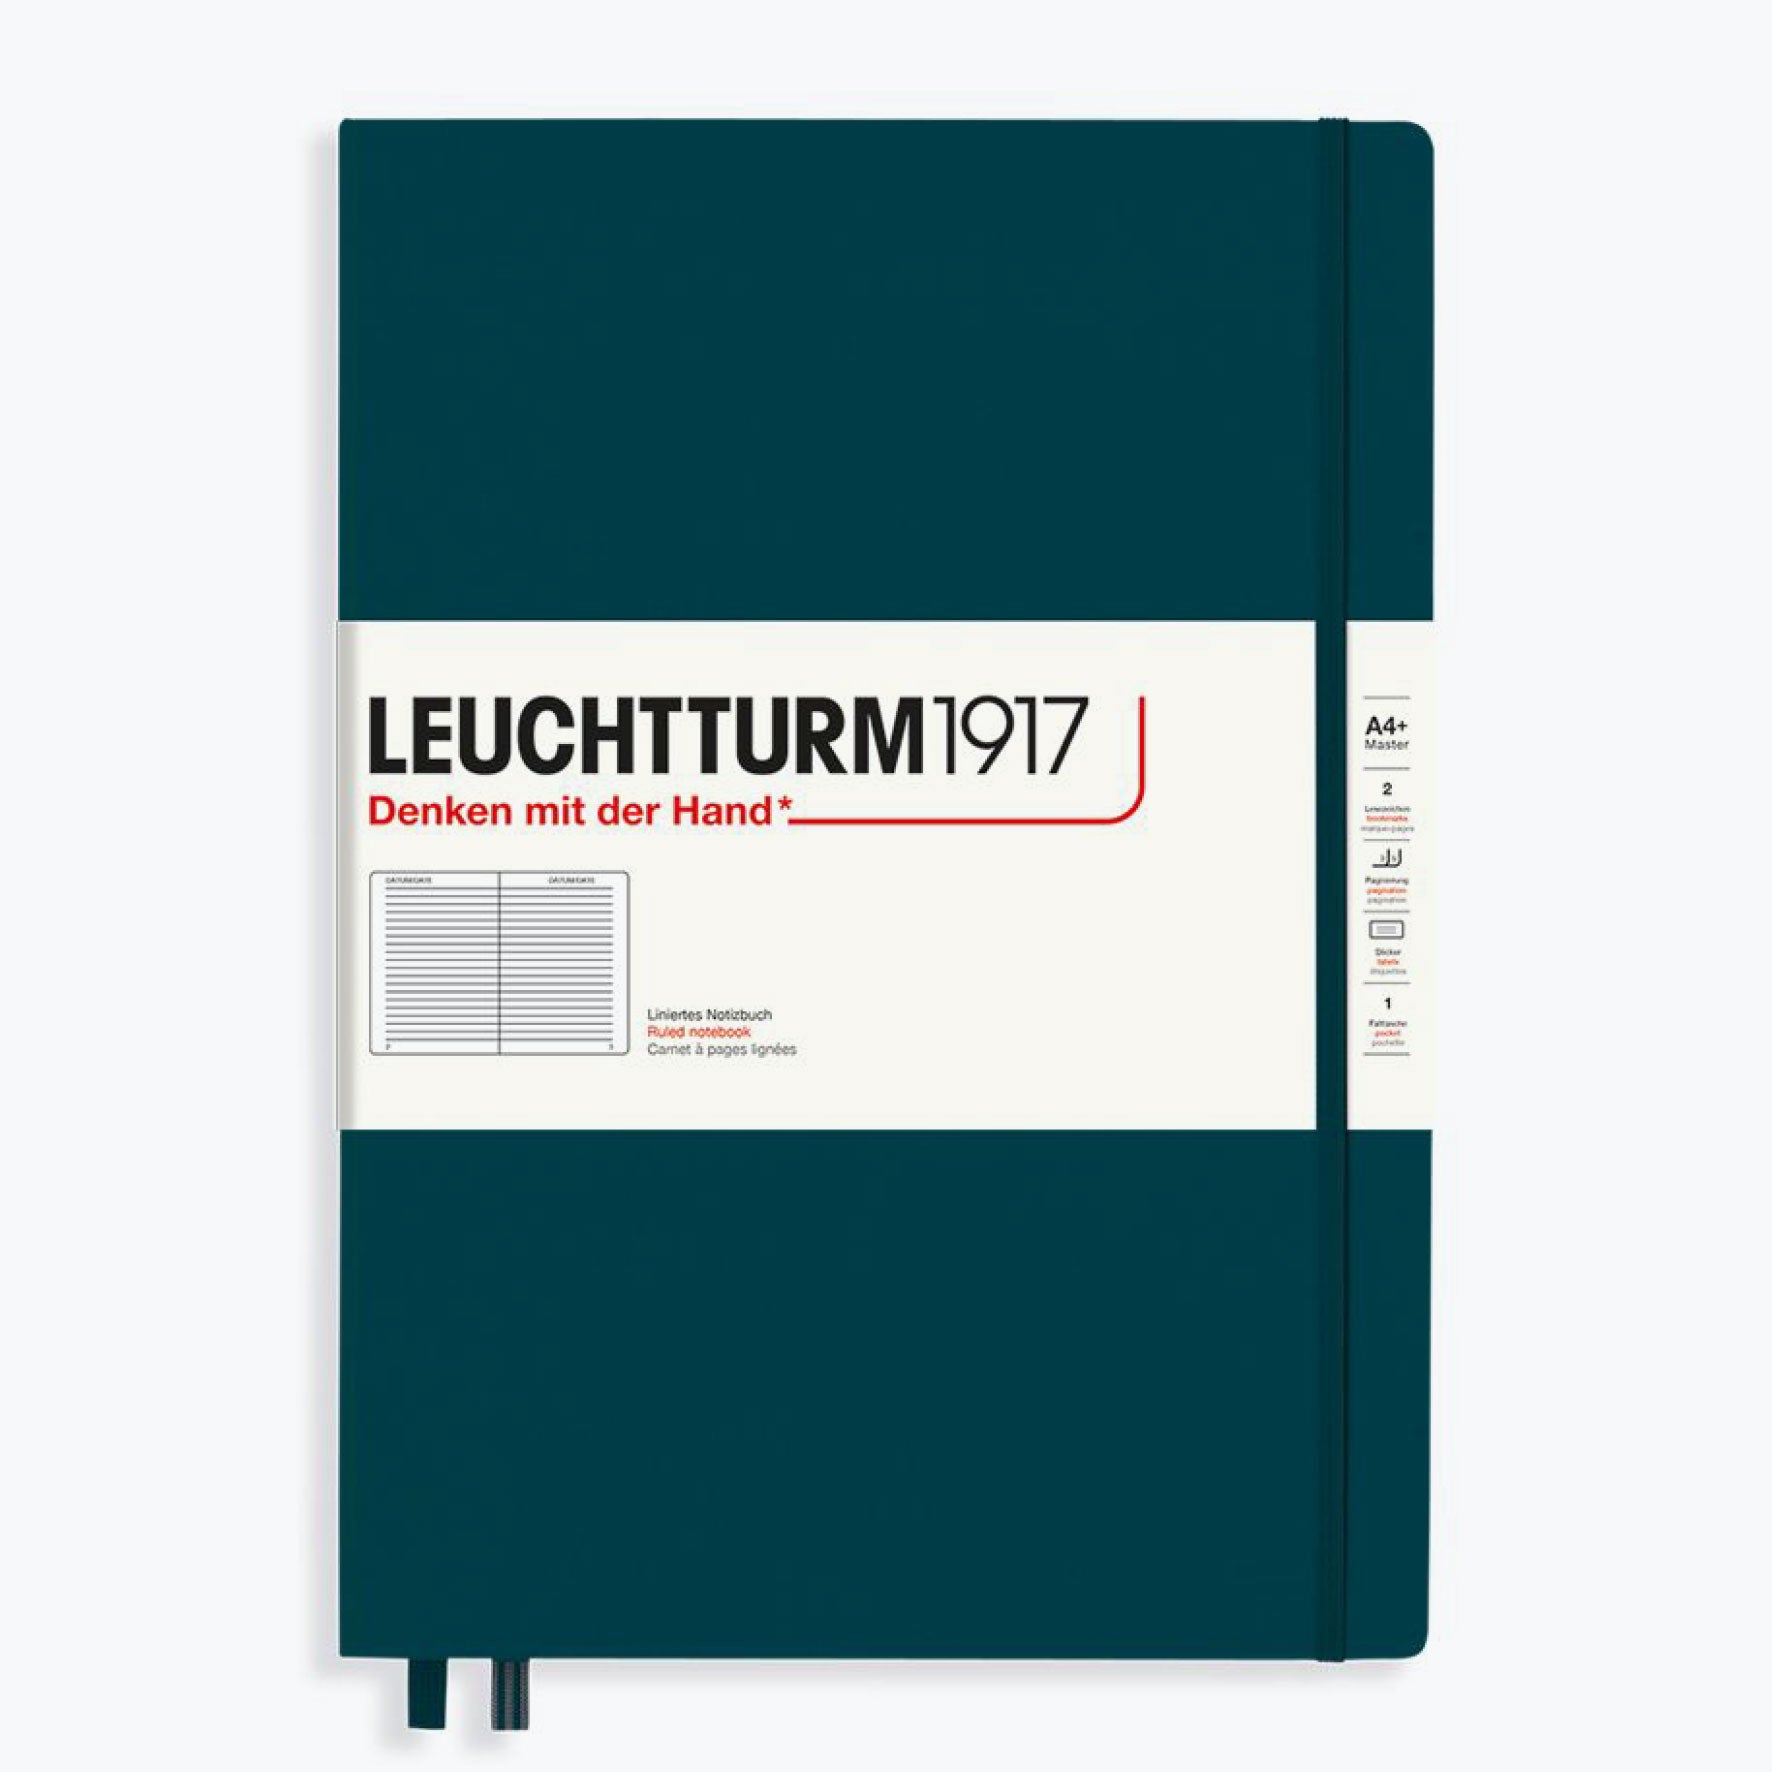 Leuchtturm1917 - Notebook - A4+ - Pacific Green